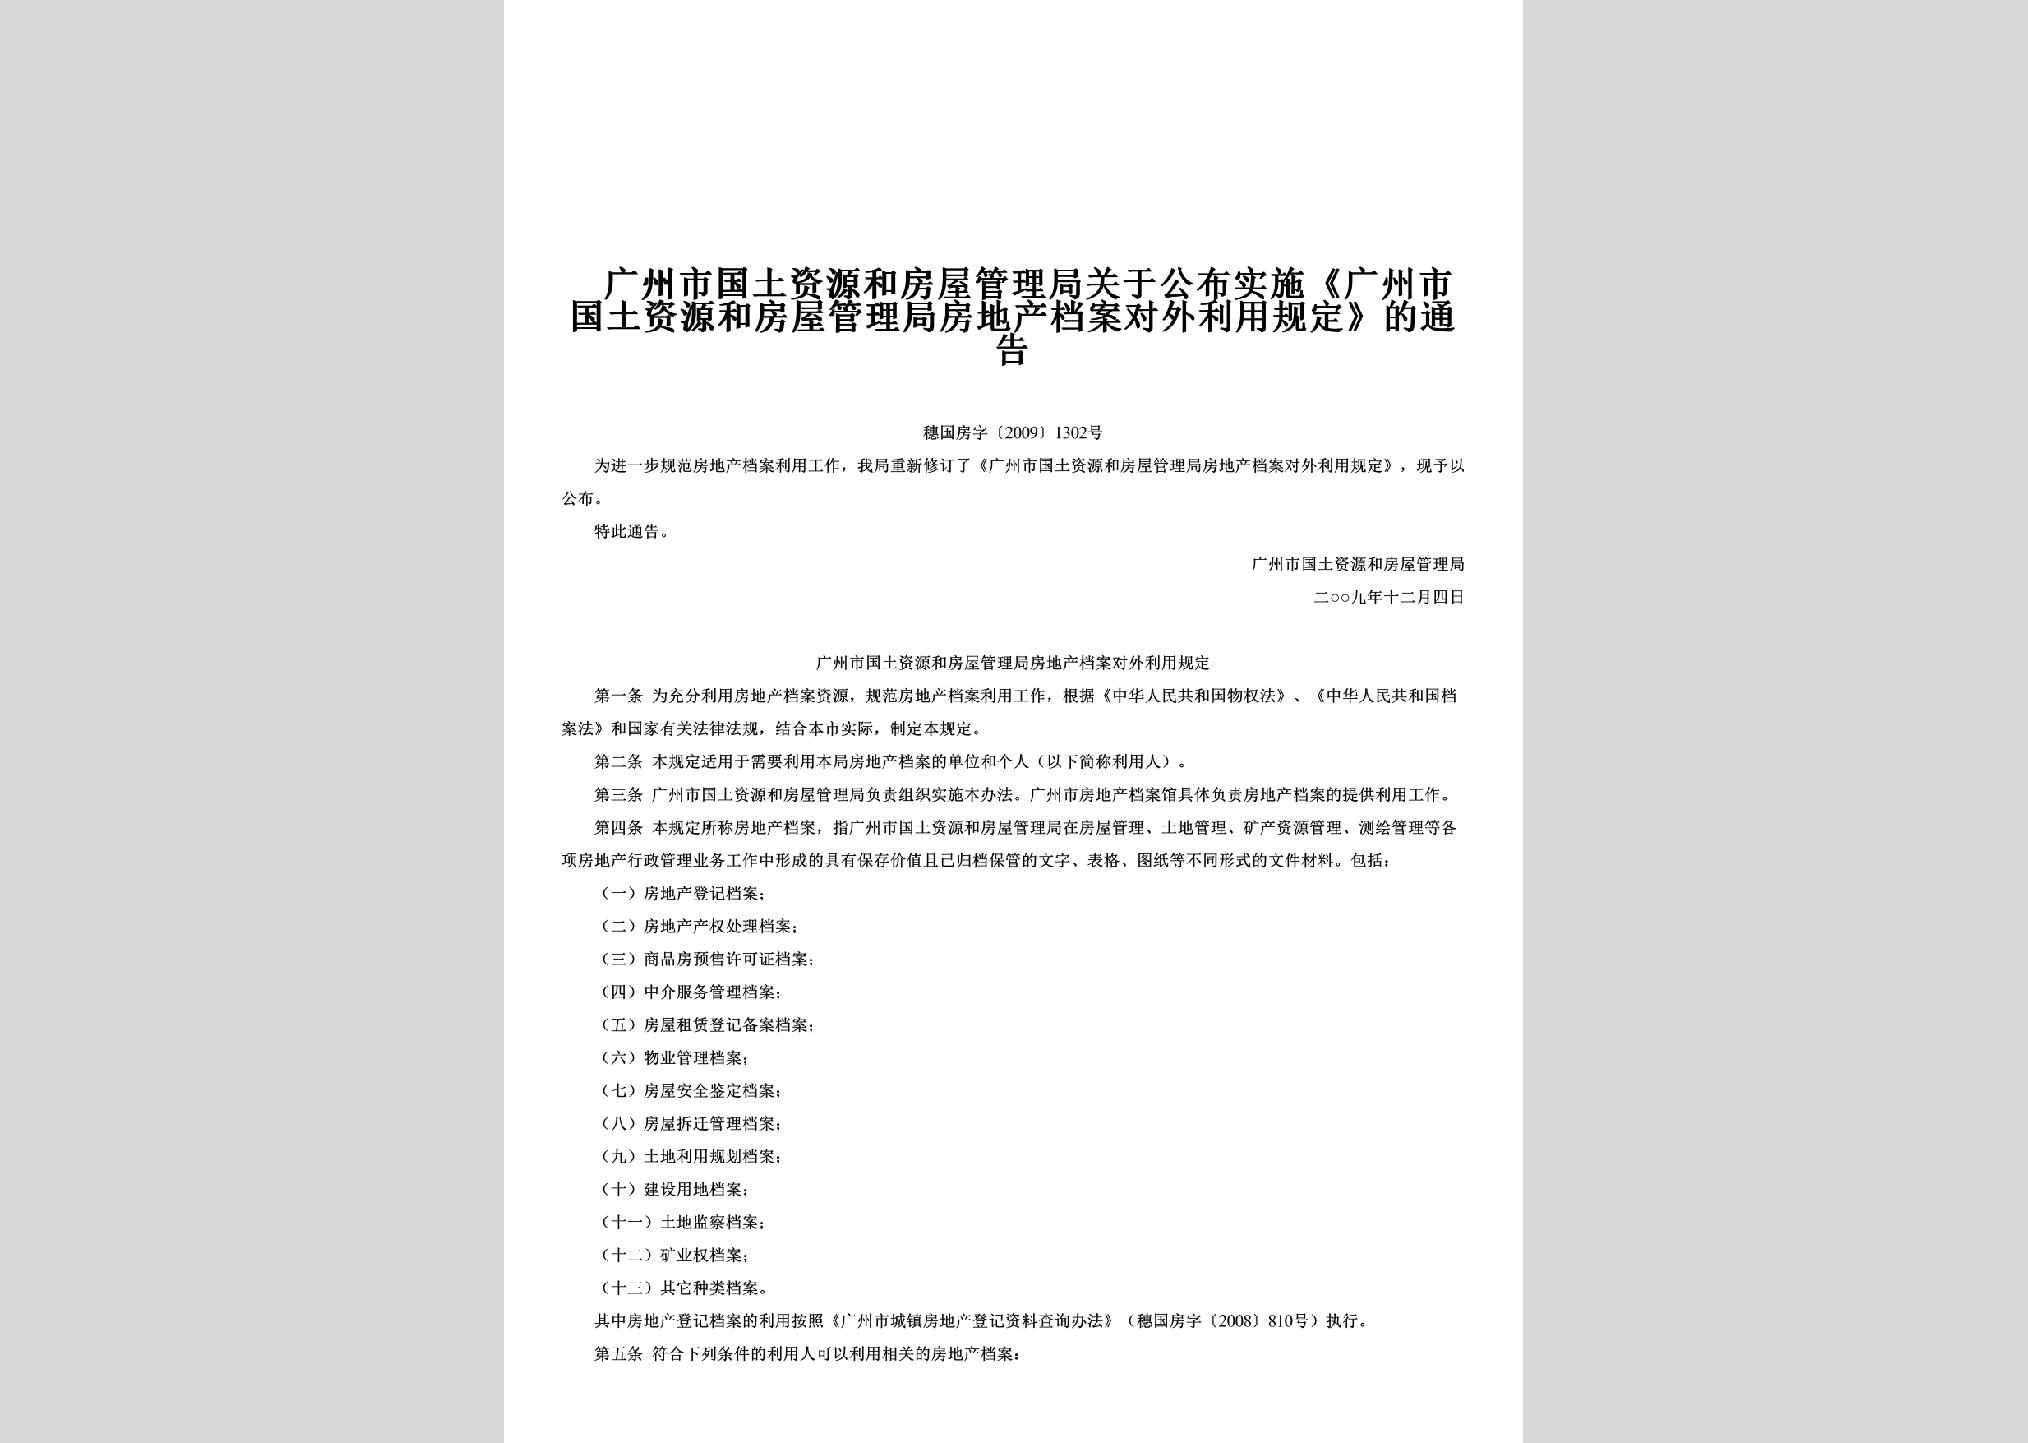 穗国房字[2009]1302号：关于公布实施《广州市国土资源和房屋管理局房地产档案对外利用规定》的通告